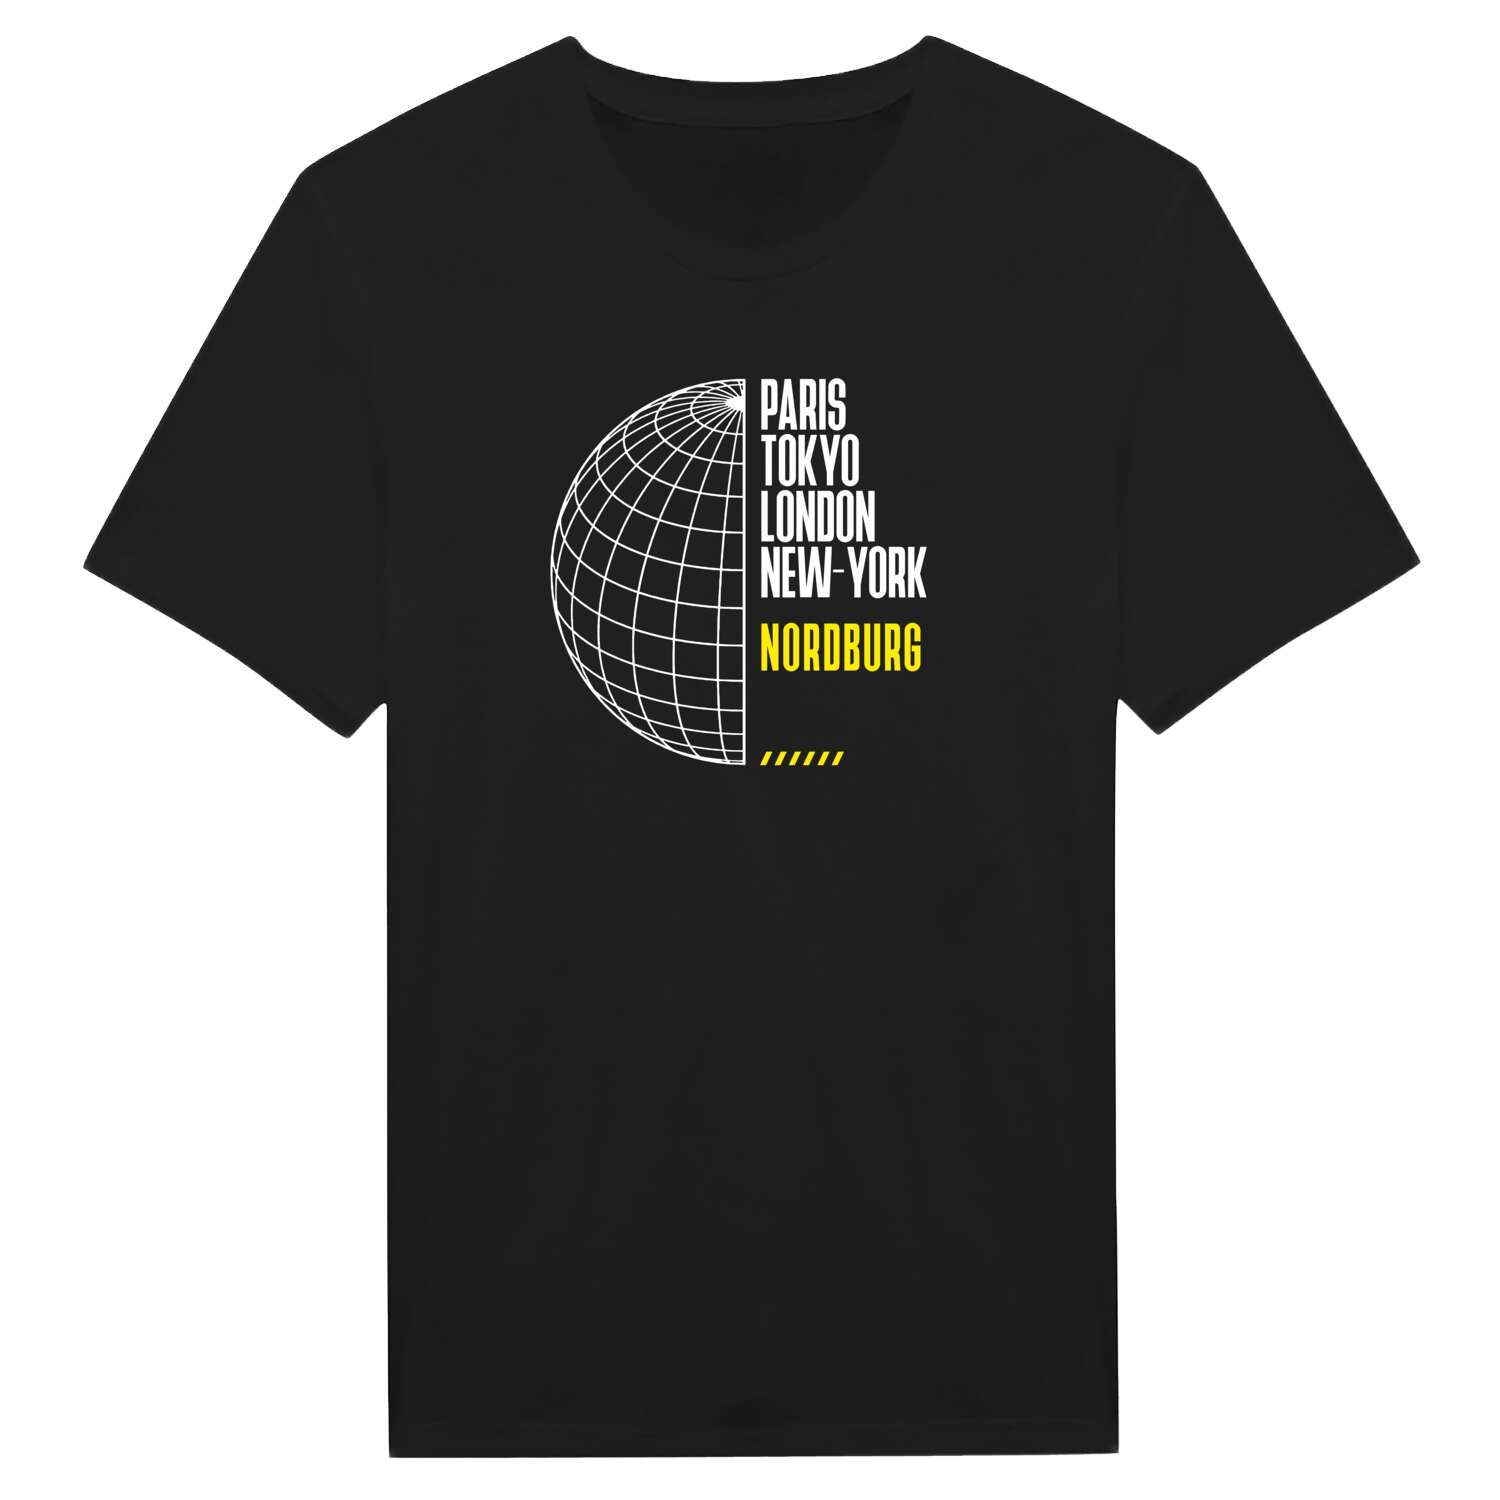 Nordburg T-Shirt »Paris Tokyo London«